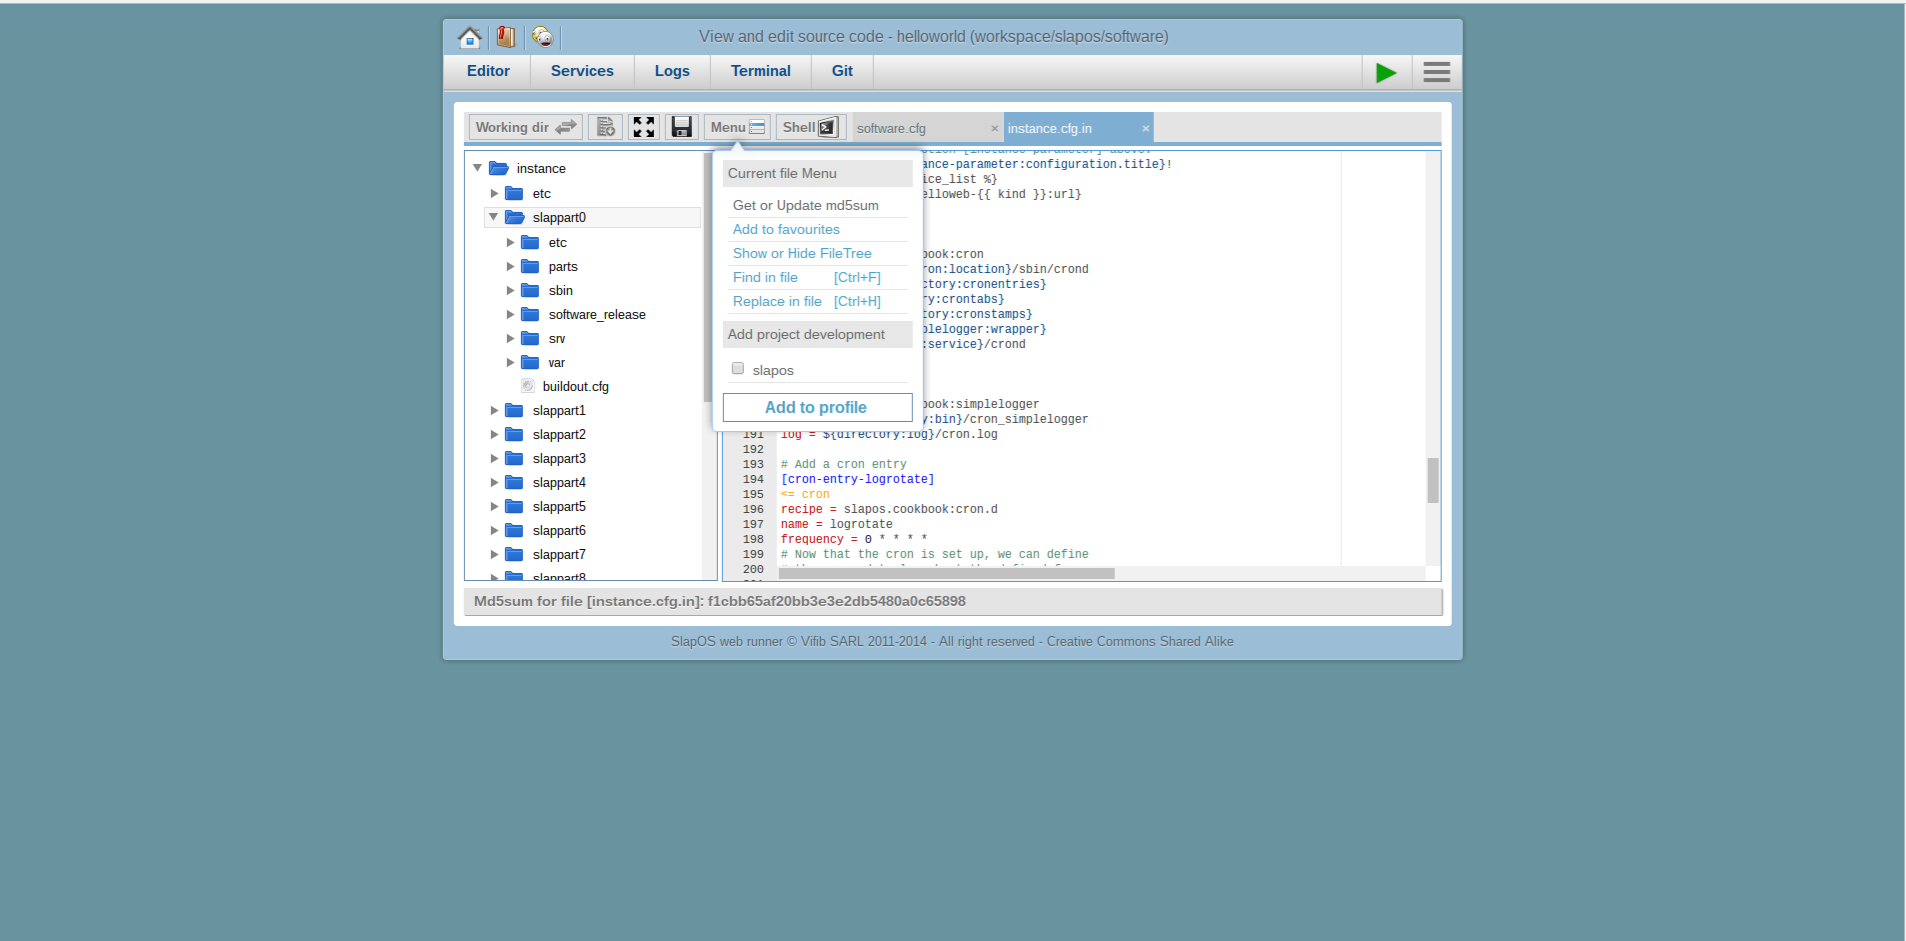 Extending Software Release - Webrunner Interface - Update MD5 Sum